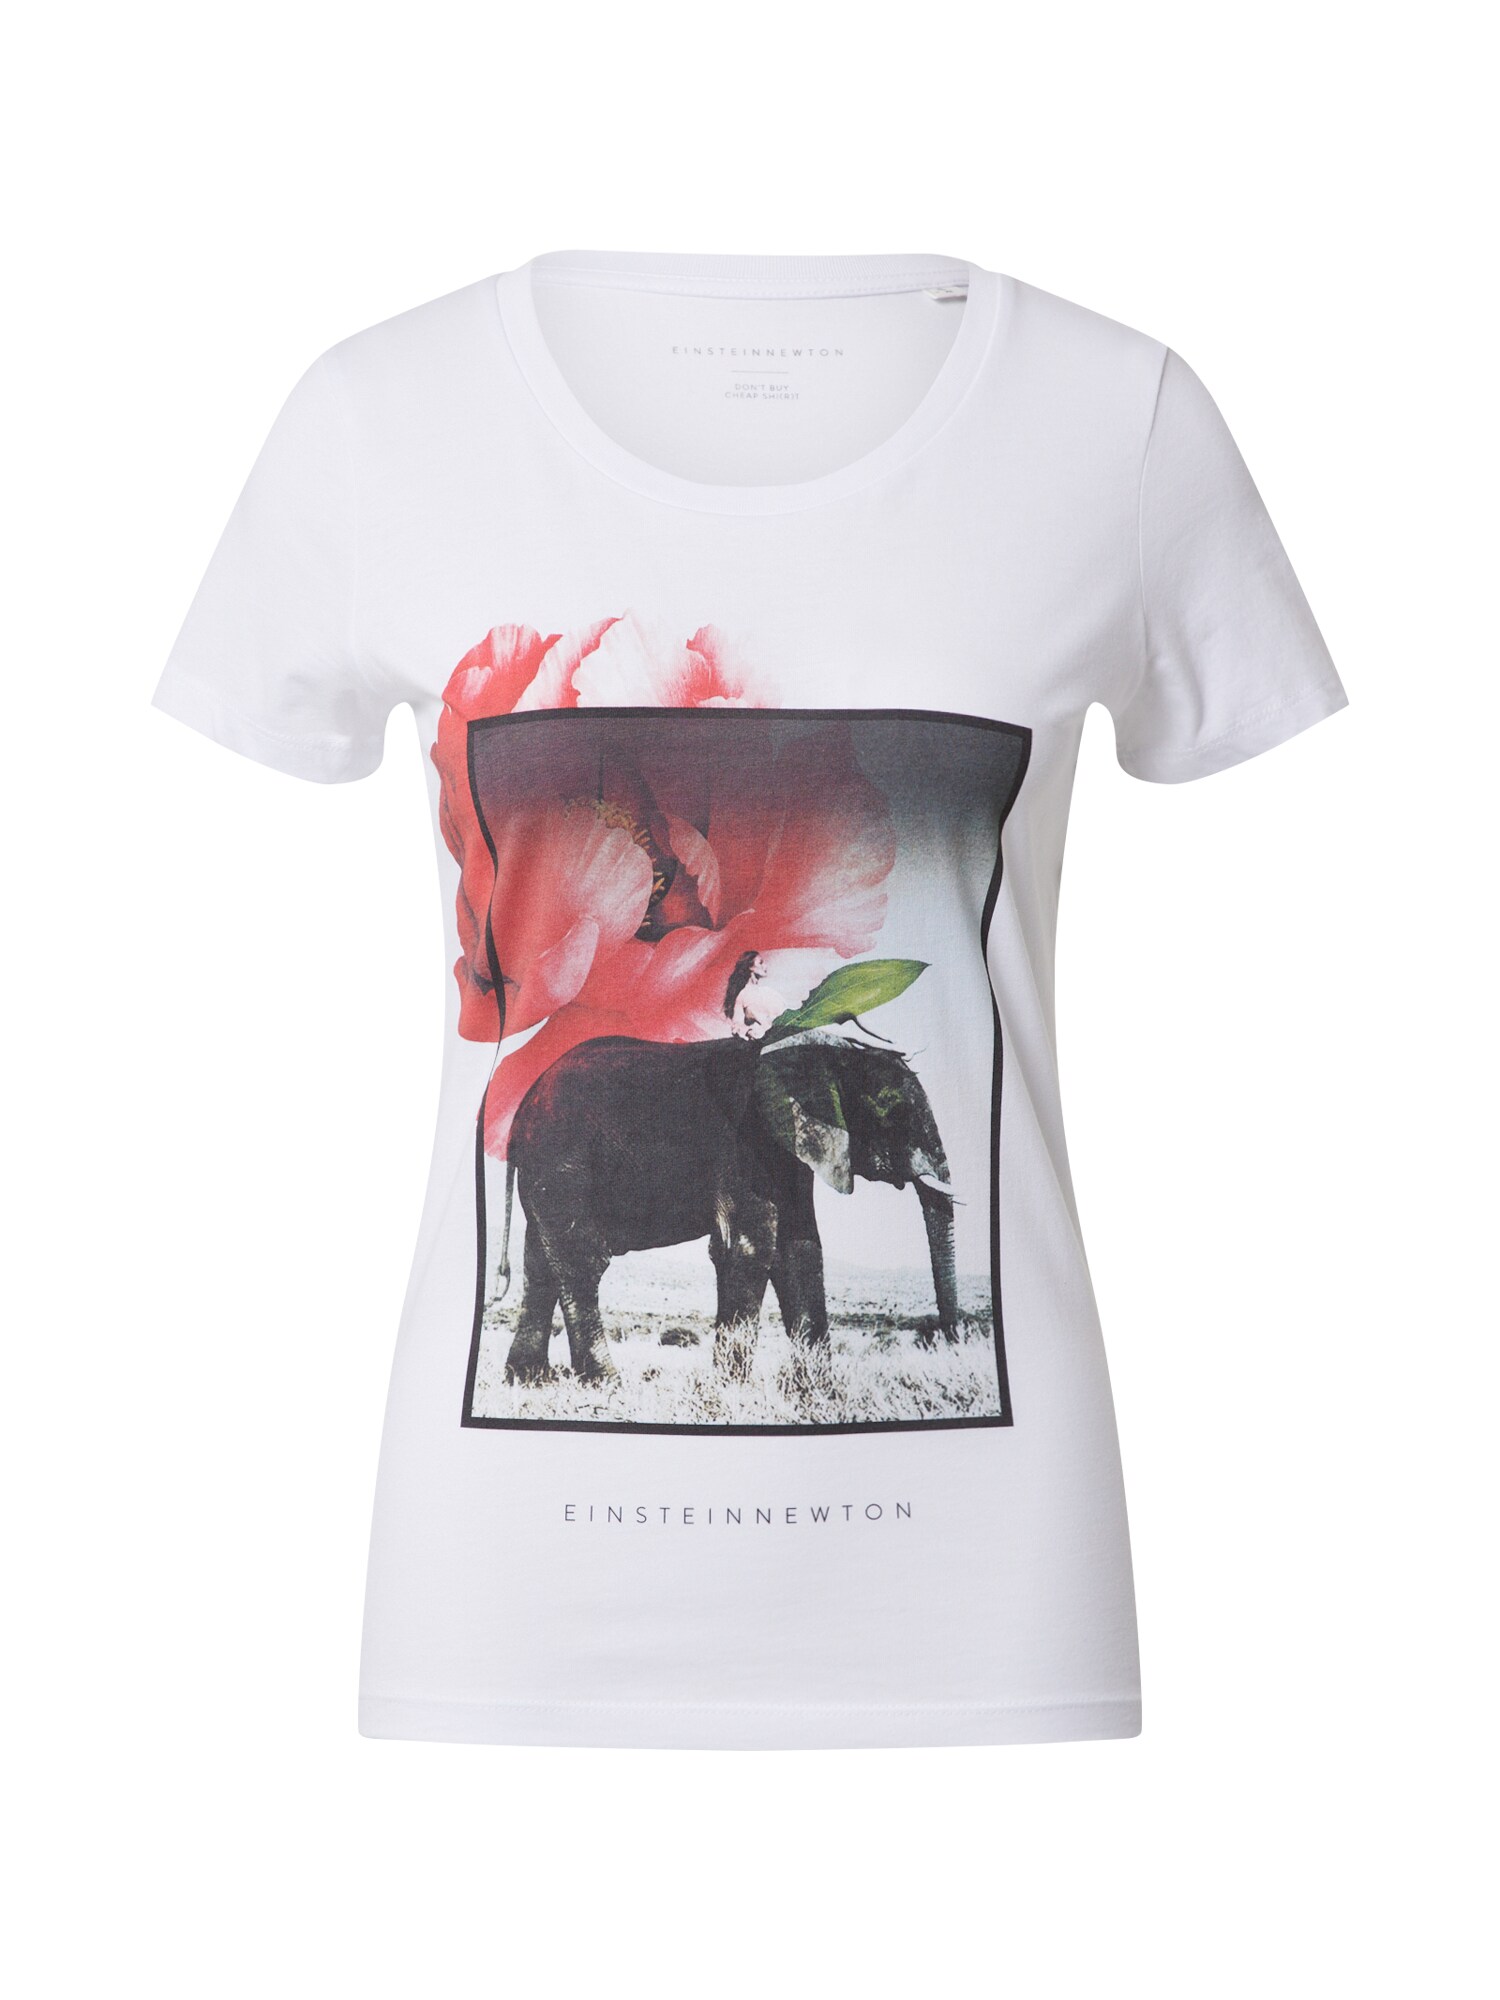 EINSTEIN & NEWTON Marškinėliai 'Elephant'  mišrios spalvos / balta / rožinė